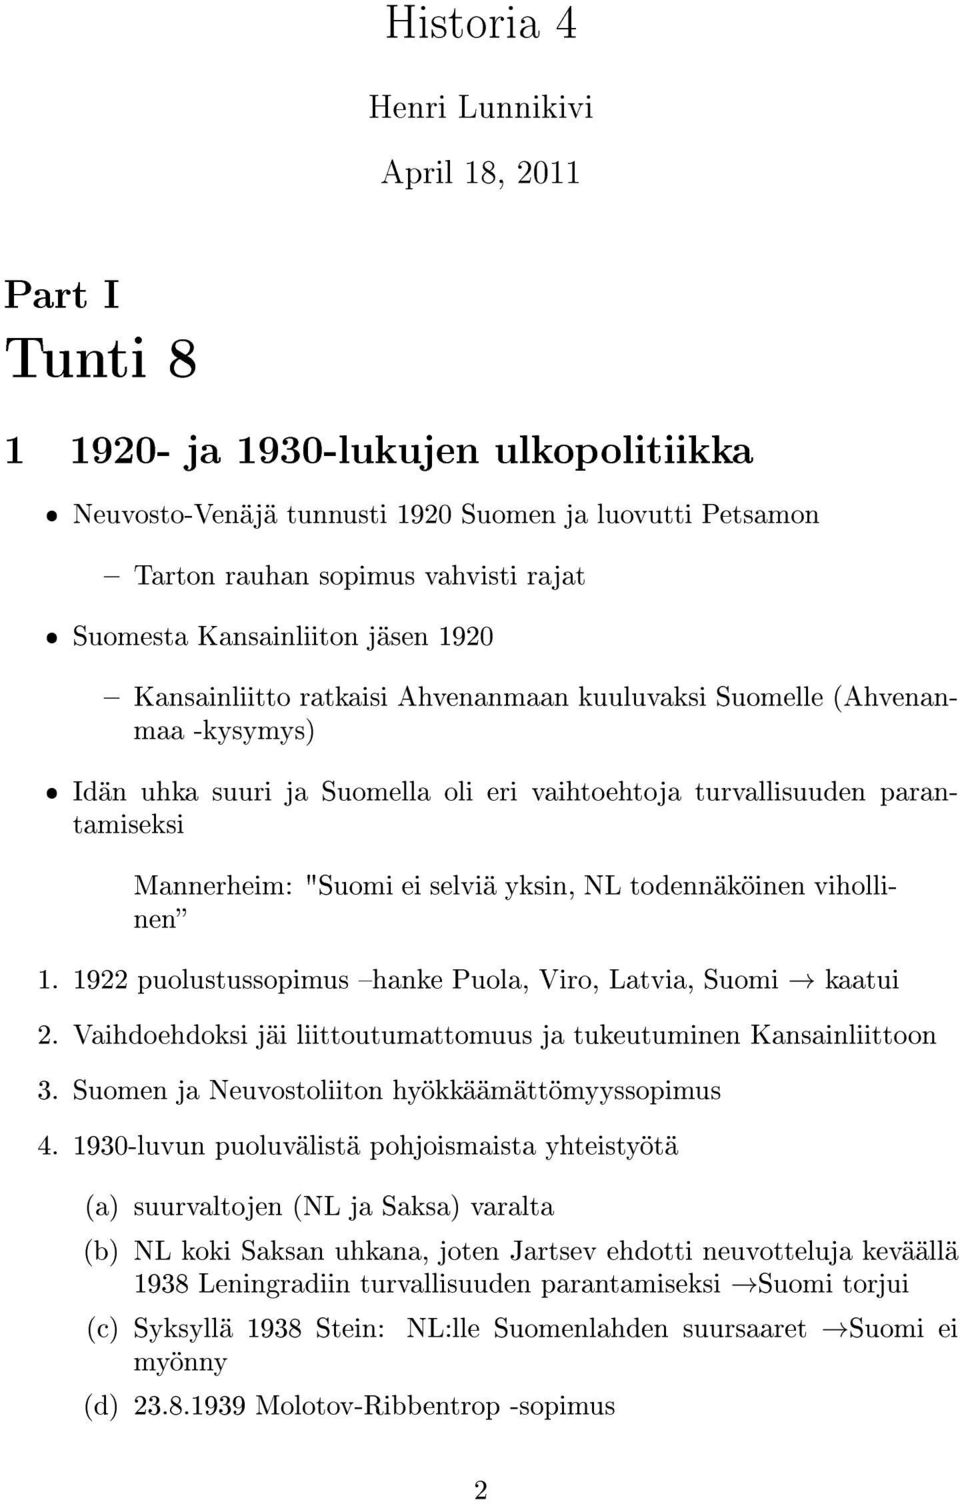 Mannerheim: "Suomi ei selviä yksin, NL todennäköinen vihollinen 1. 1922 puolustussopimus hanke Puola, Viro, Latvia, Suomi kaatui 2.